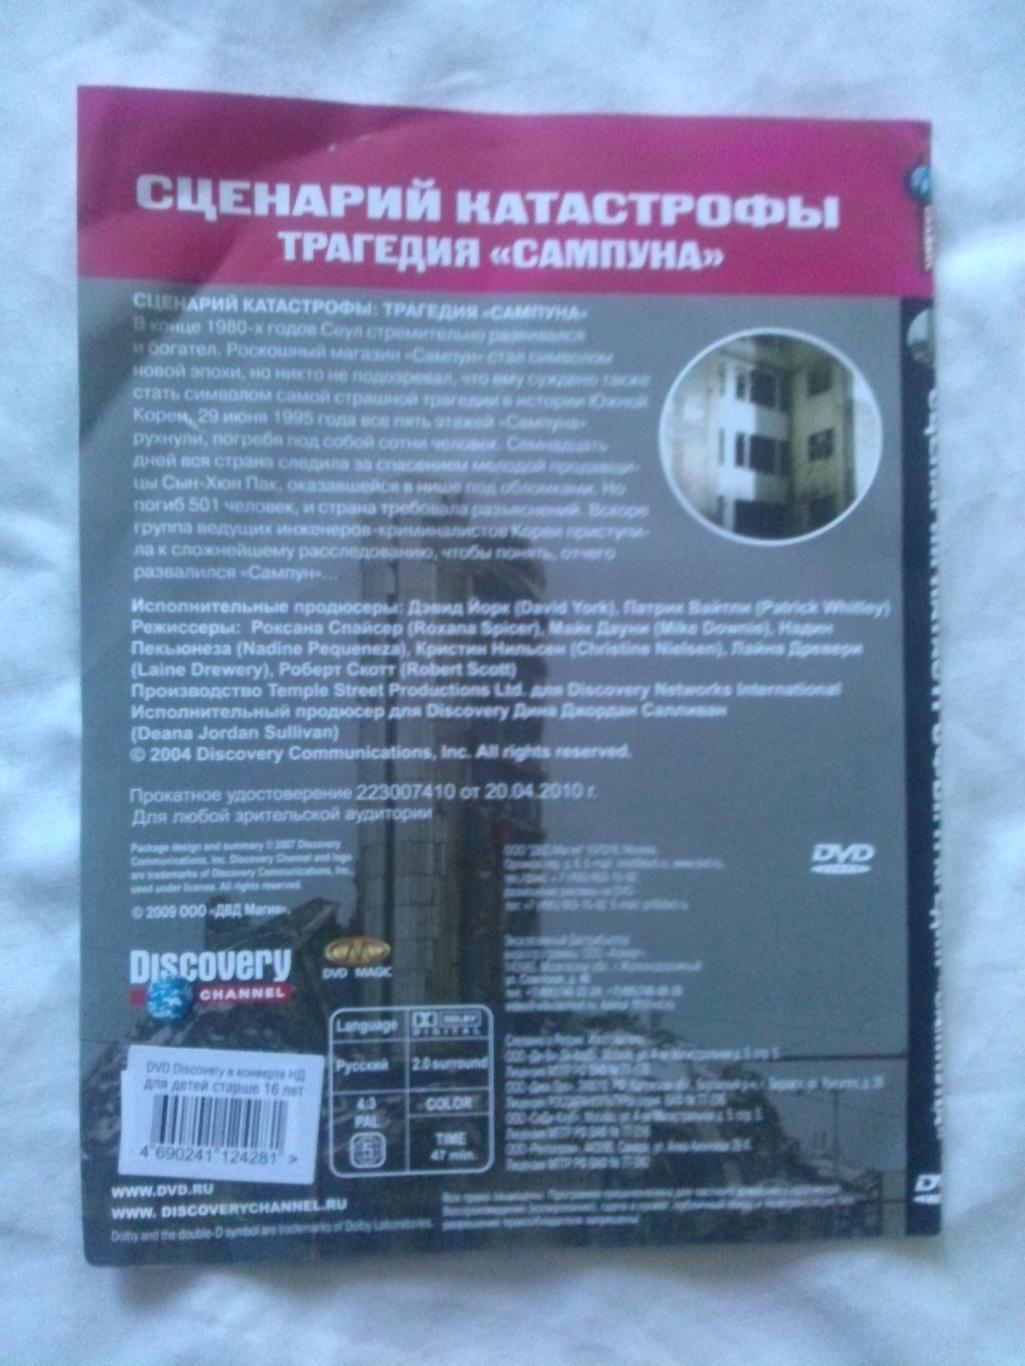 DVD Discovery лицензия документальное кино Сценарий катастрофы Традегия Сампуна 1